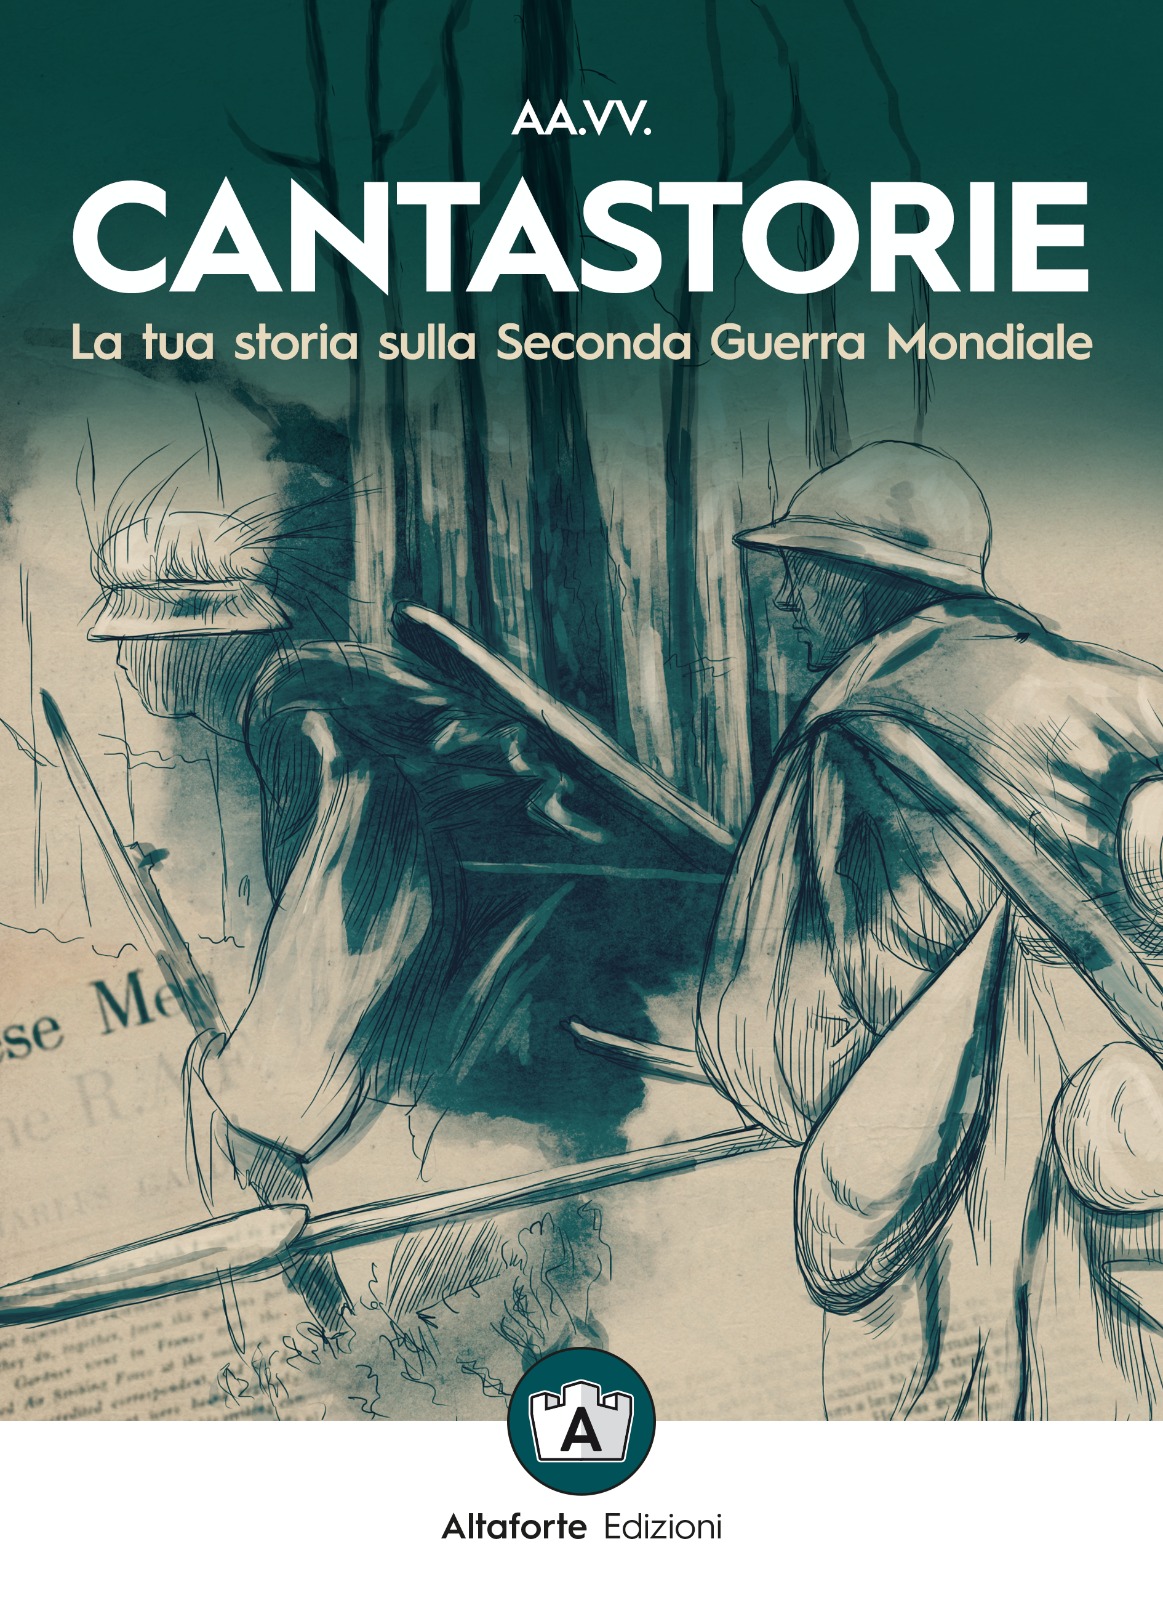 In uscita “Cantastorie” il libro coi racconti più belli dei lettori di Altaforte Edizioni